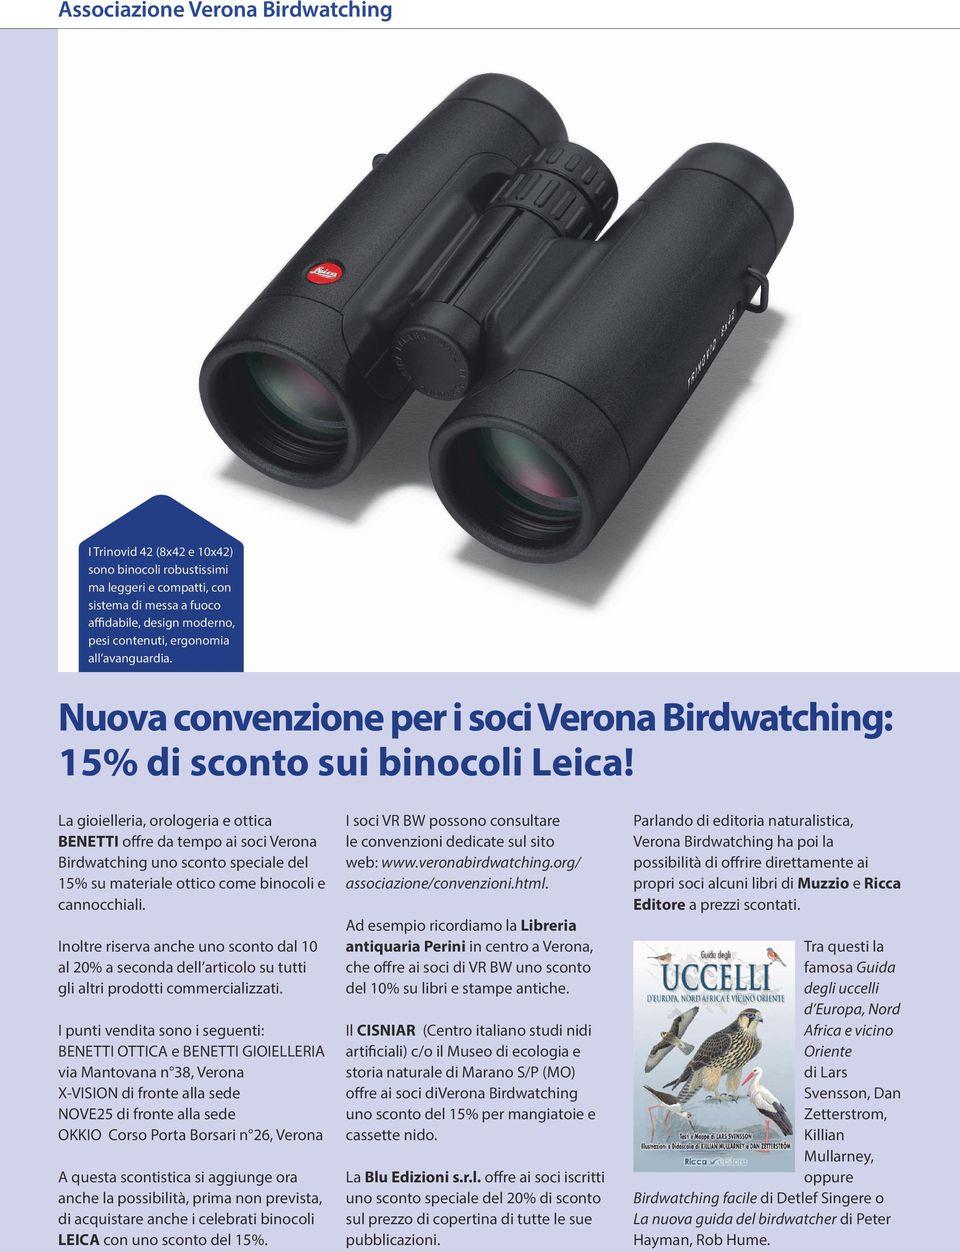 La gioielleria, orologeria e ottica BENETTI offre da tempo ai soci Verona Birdwatching uno sconto speciale del 15% su materiale ottico come binocoli e cannocchiali.